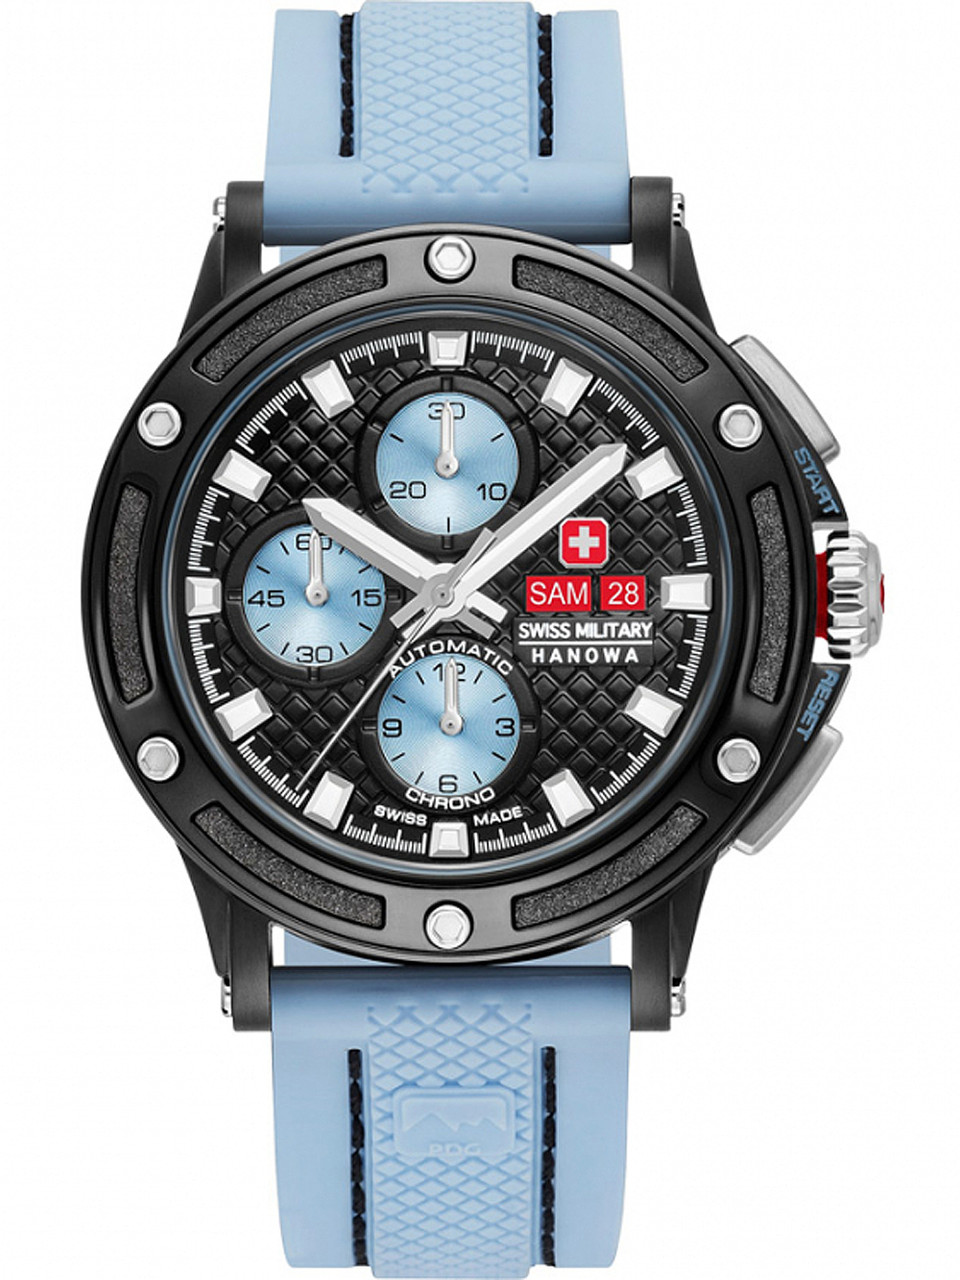 Swiss Military Hanowa 05-4347-13-04-001 PDG chrono automatic 45mm 10ATM -  owlica | Genuine Watches | Schweizer Uhren